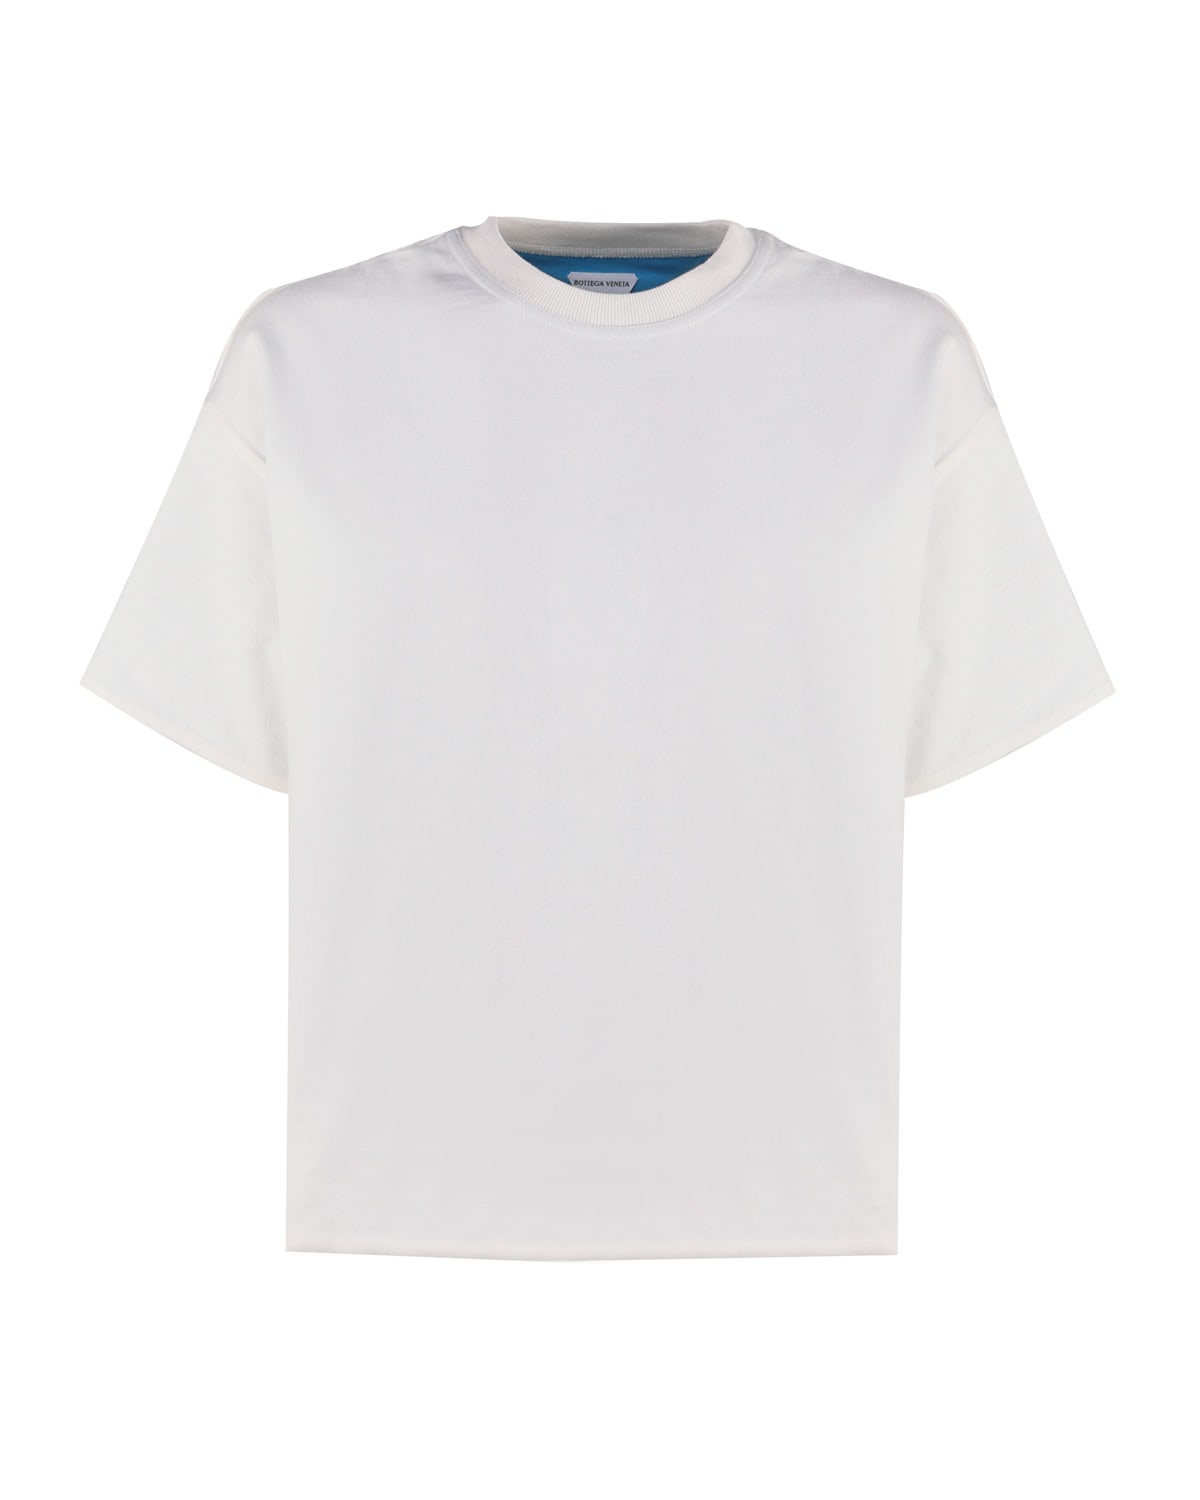 Bottega Veneta Cotton Jersey T-shirt